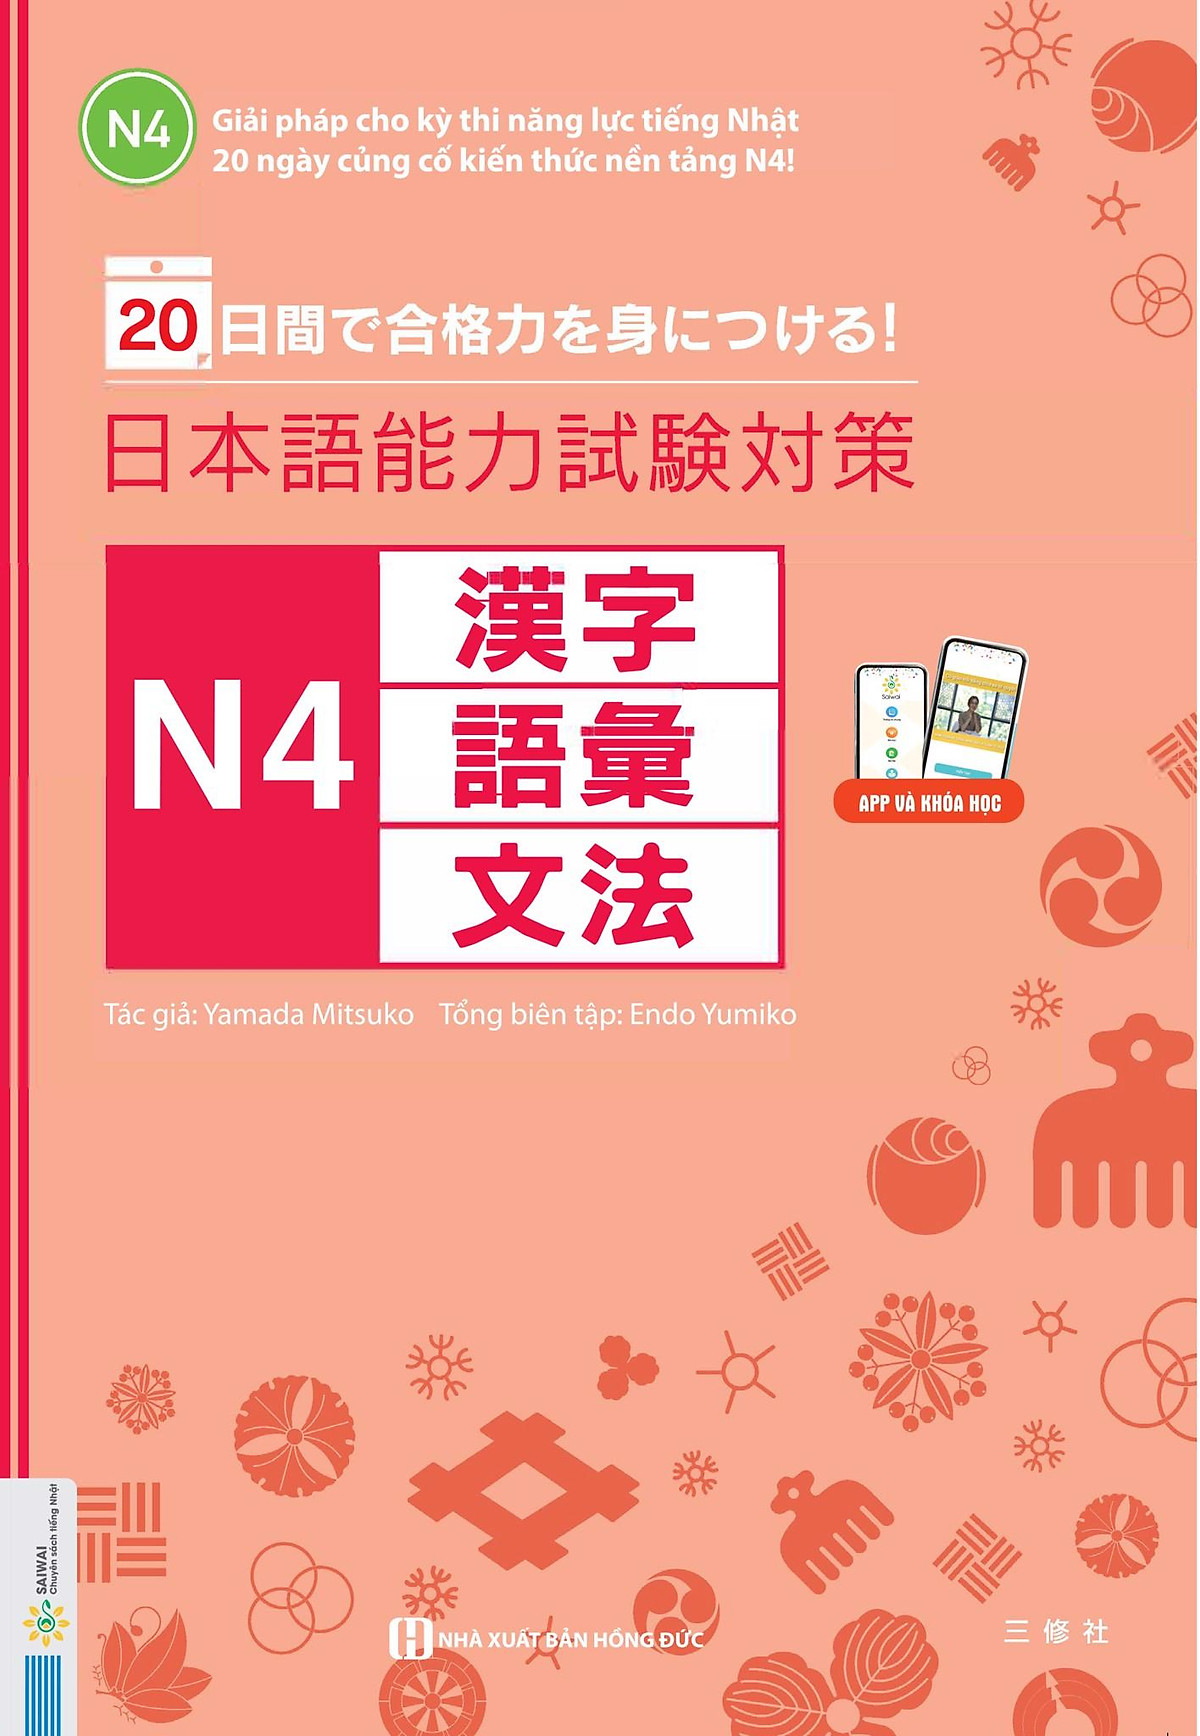 20 ngày củng cố kiến thức nền tảng N4 - Giải pháp cho kì thi năng lực tiếng Nhật